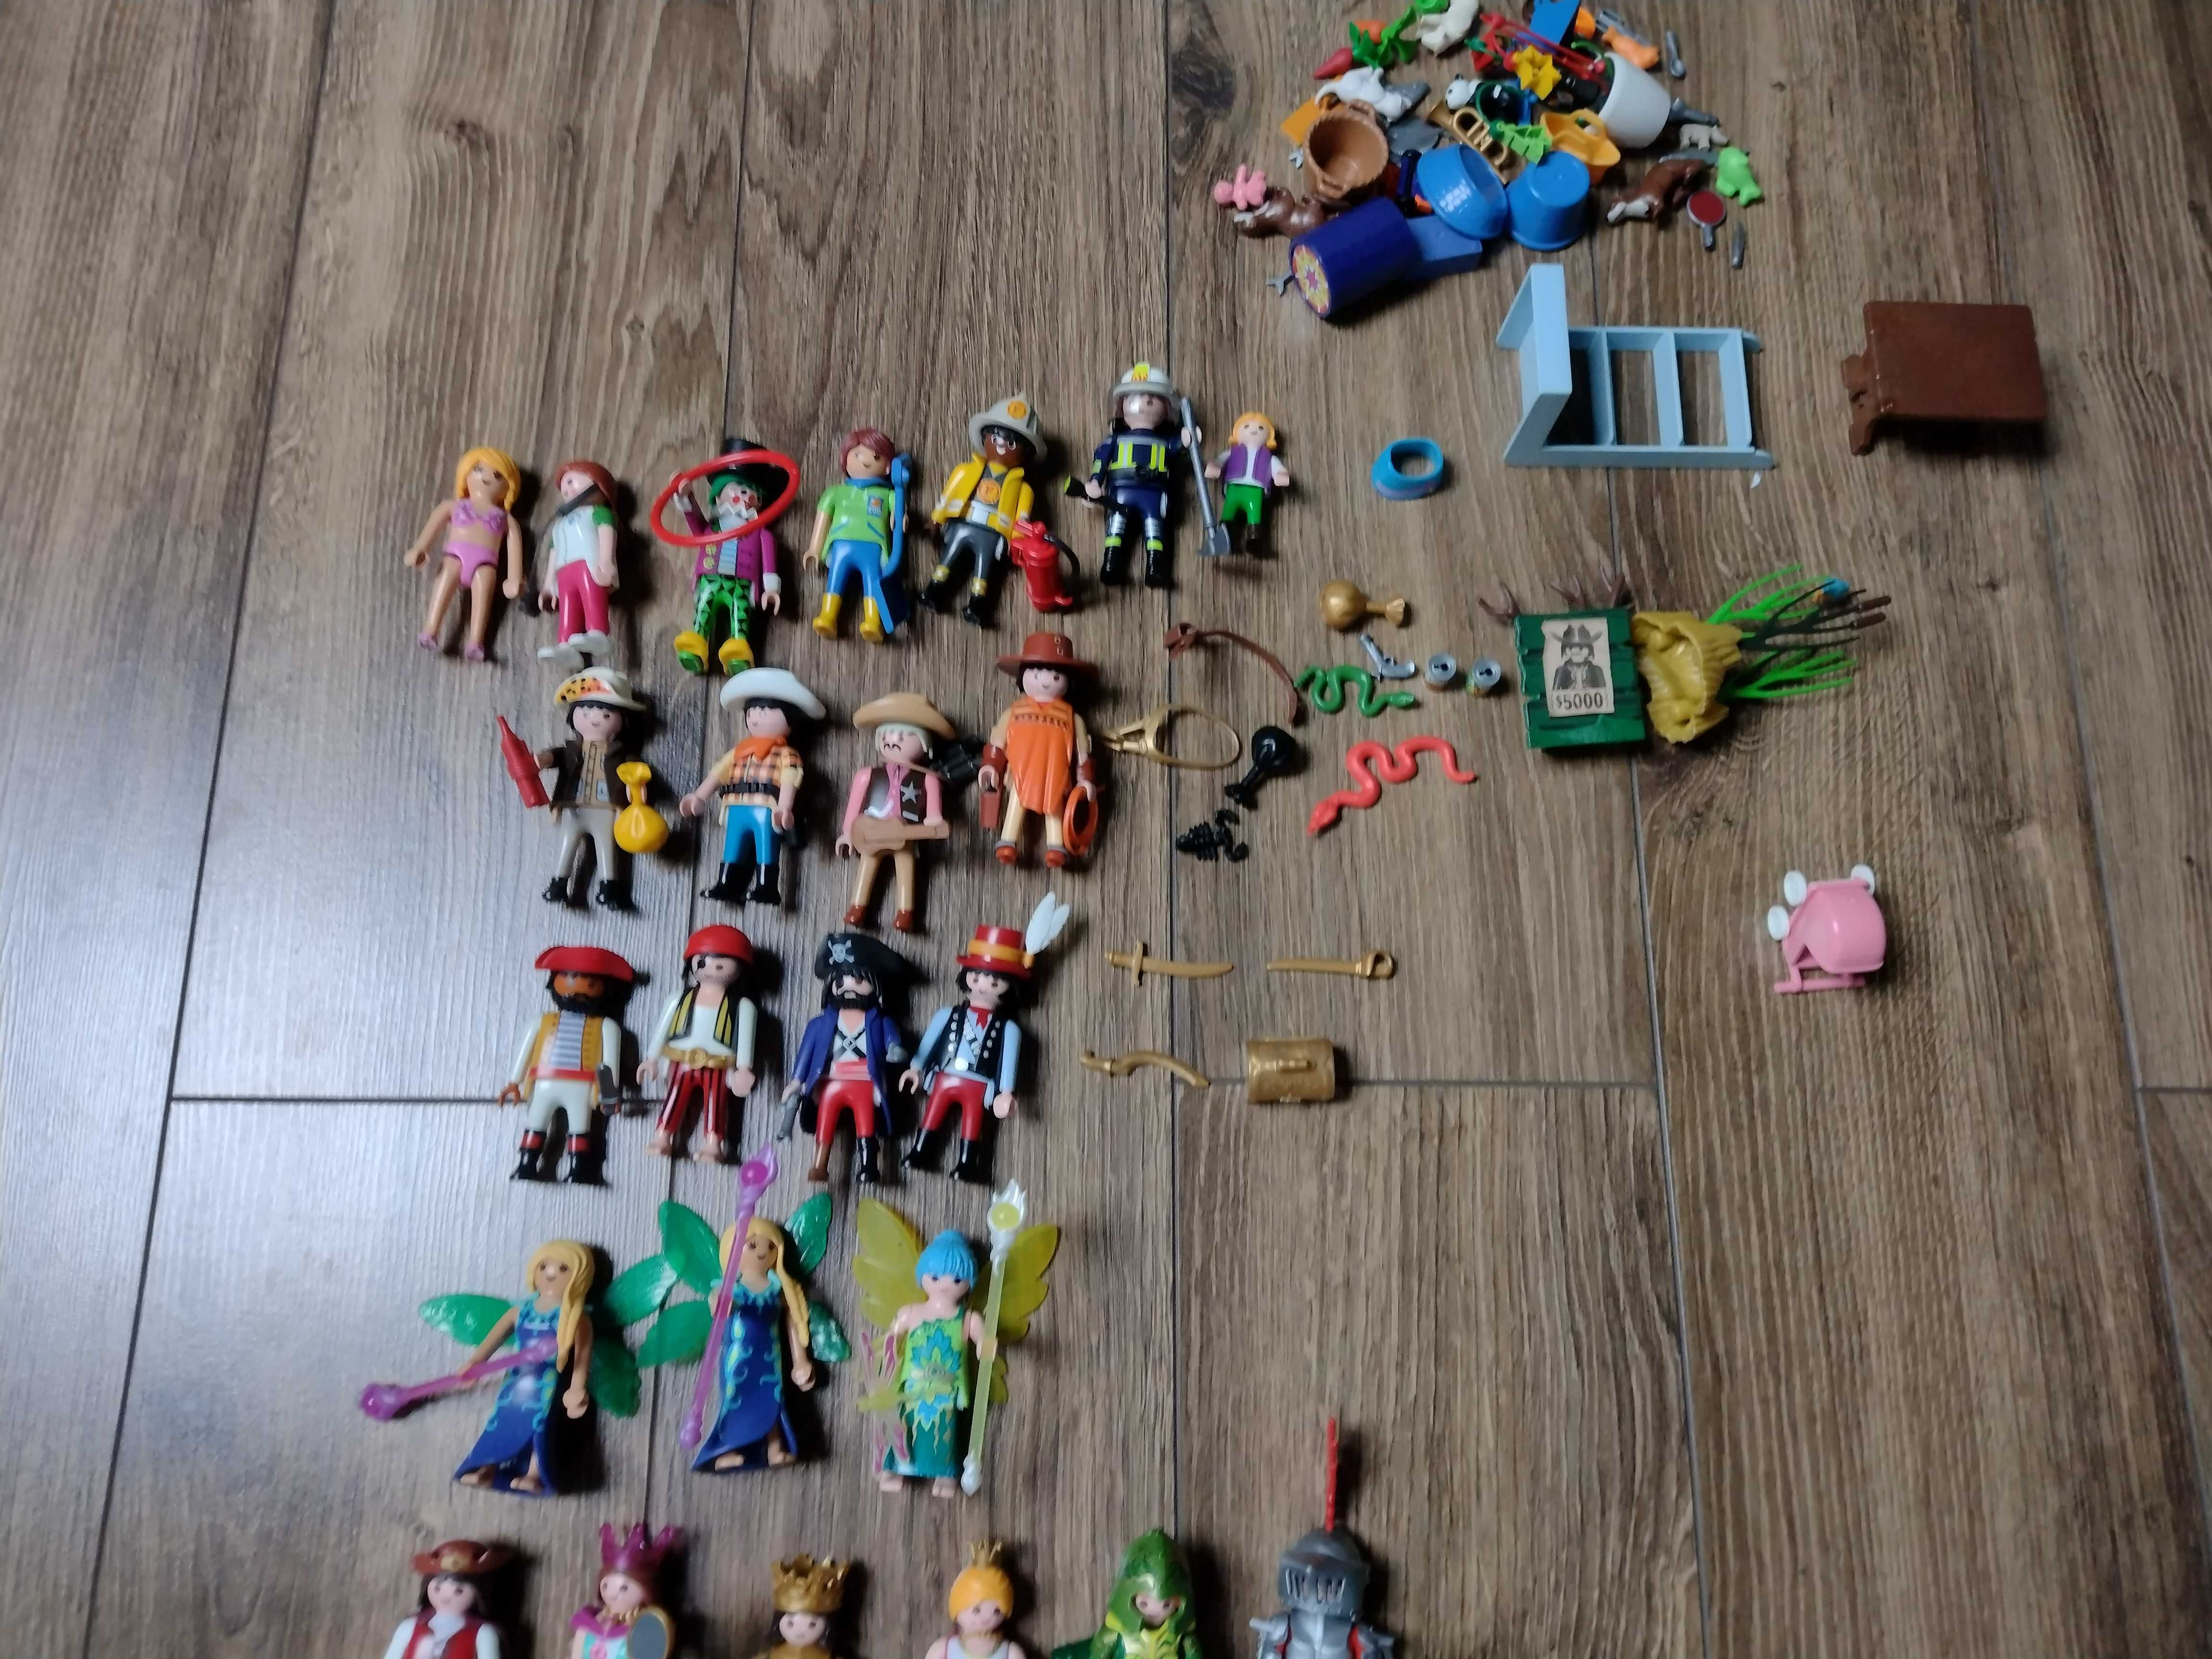 Mega zestaw Playmobil dużo figurek oraz dodatków piraci farma